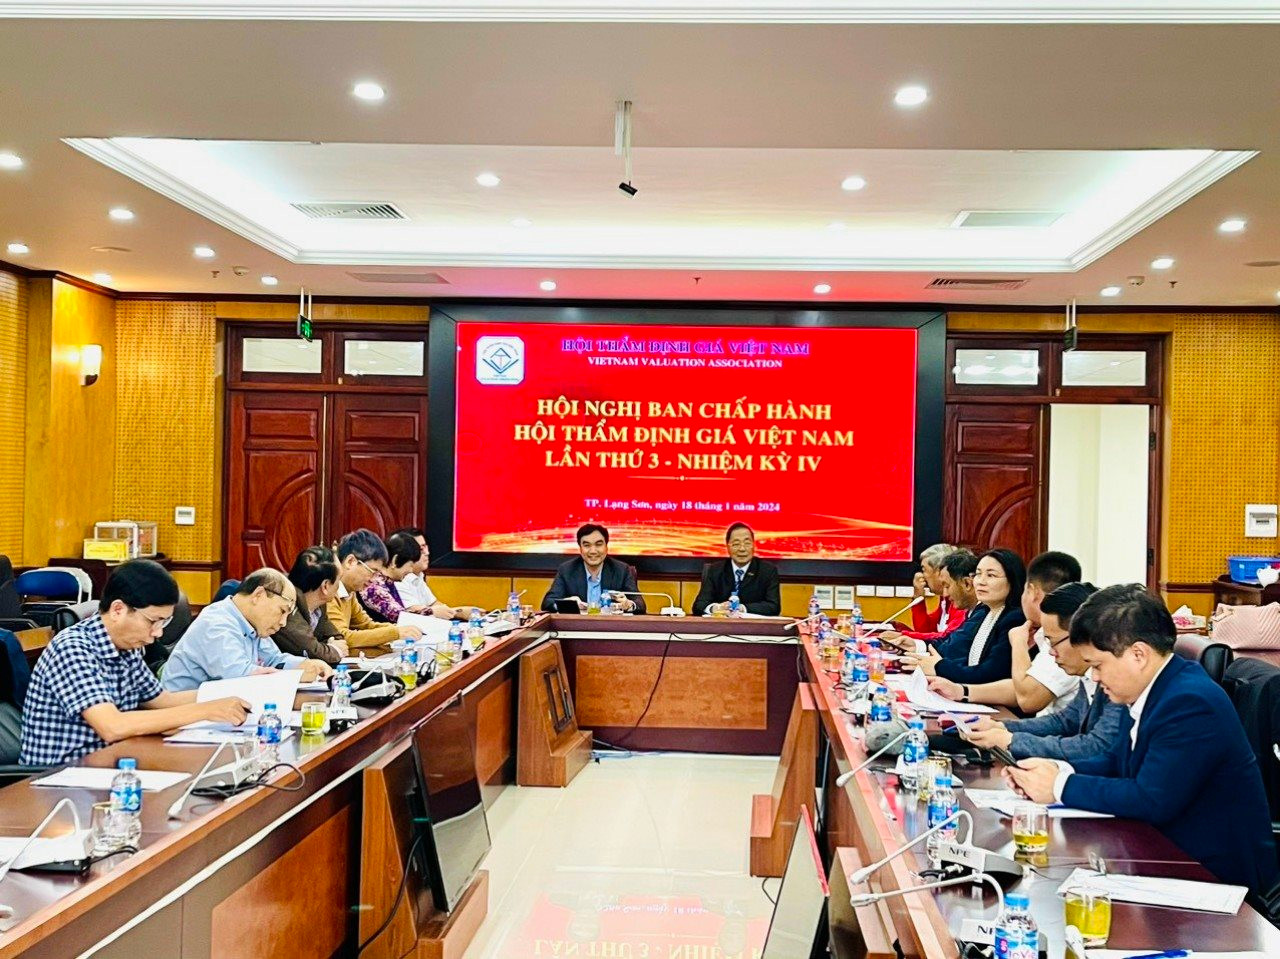 Hội Thẩm định giá Việt Nam xác định 7 nhiệm vụ trọng tâm trong năm 2024